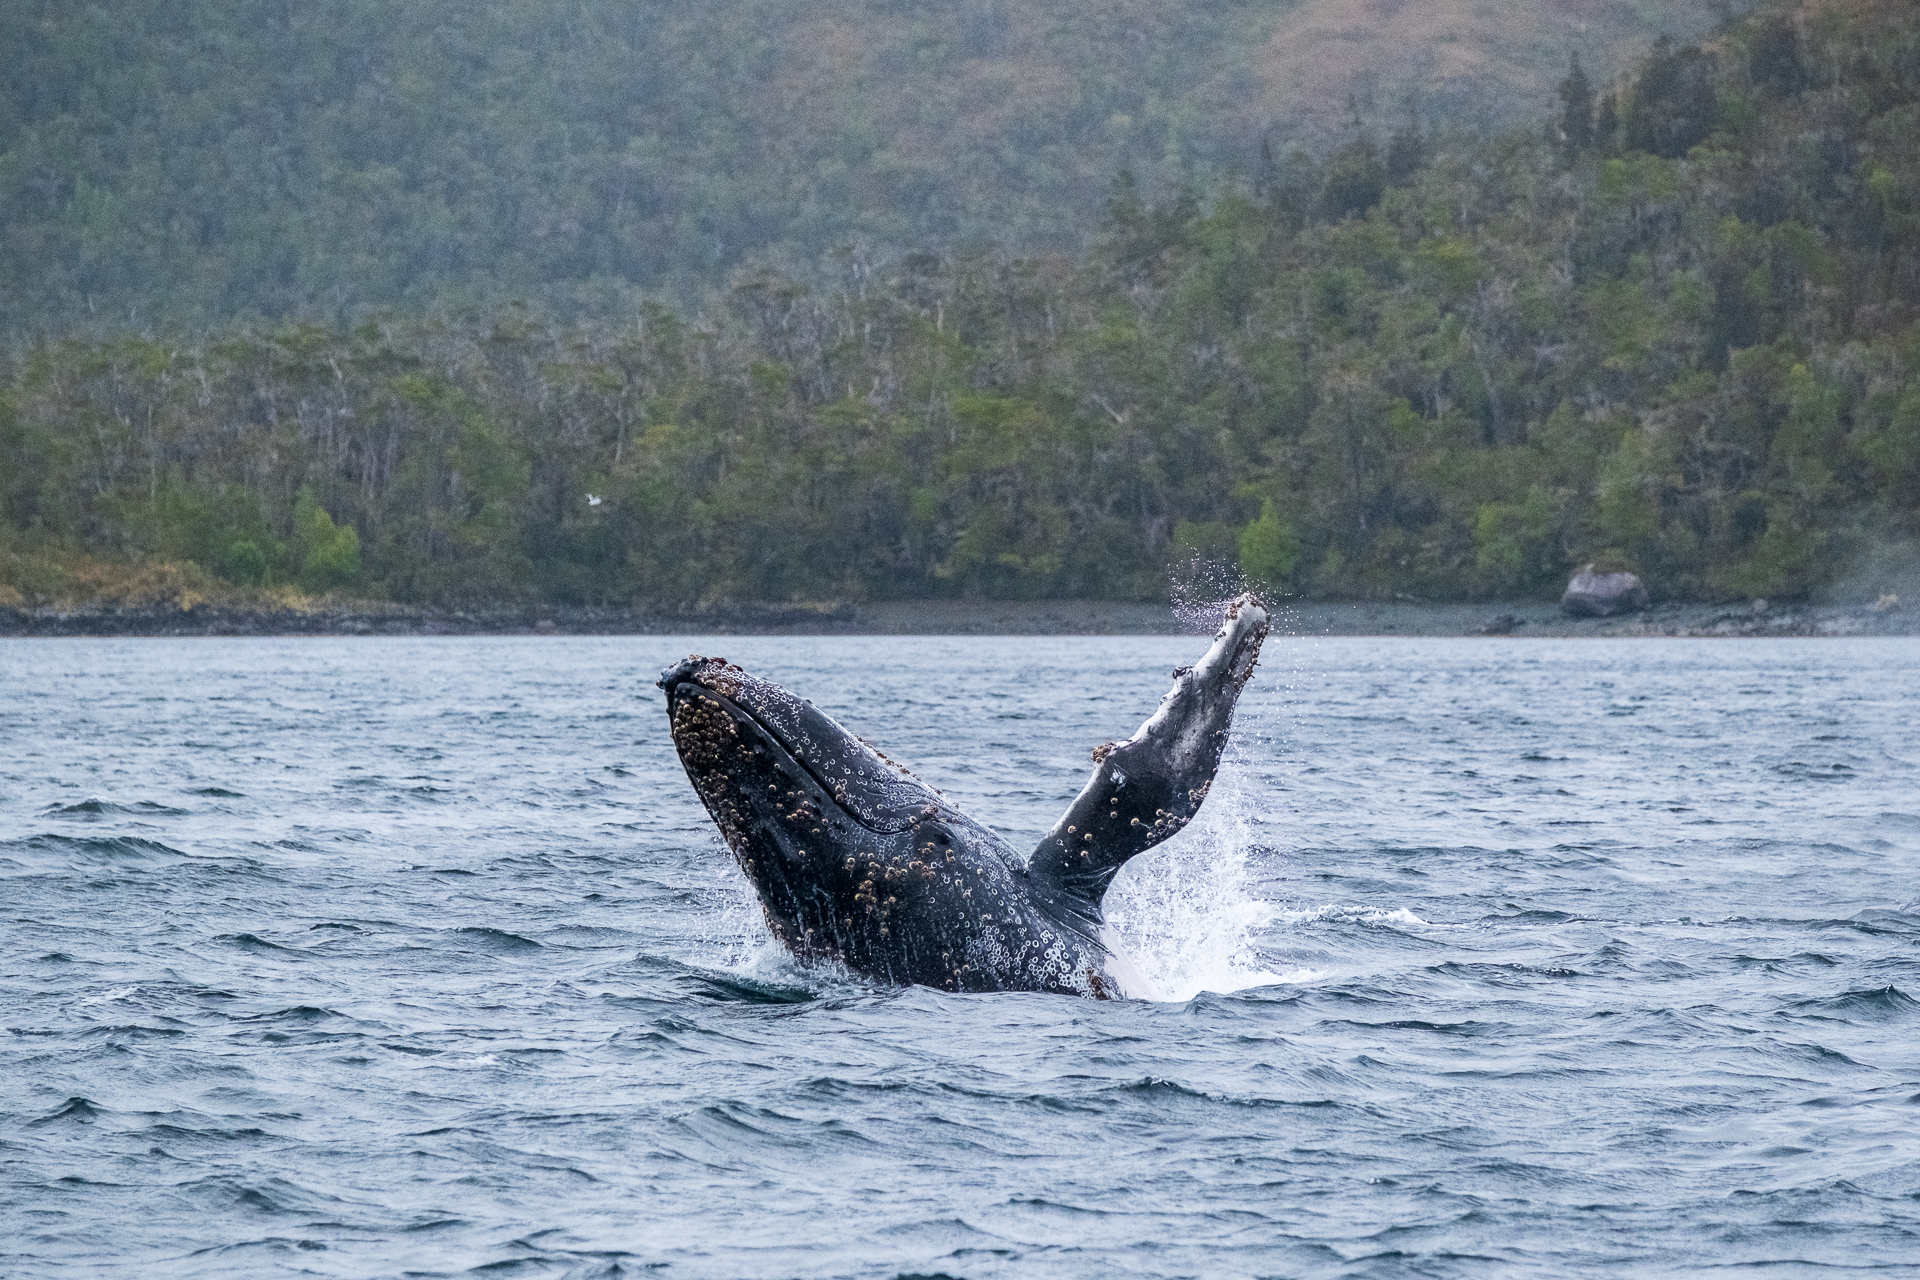 Breaching humpback whale.